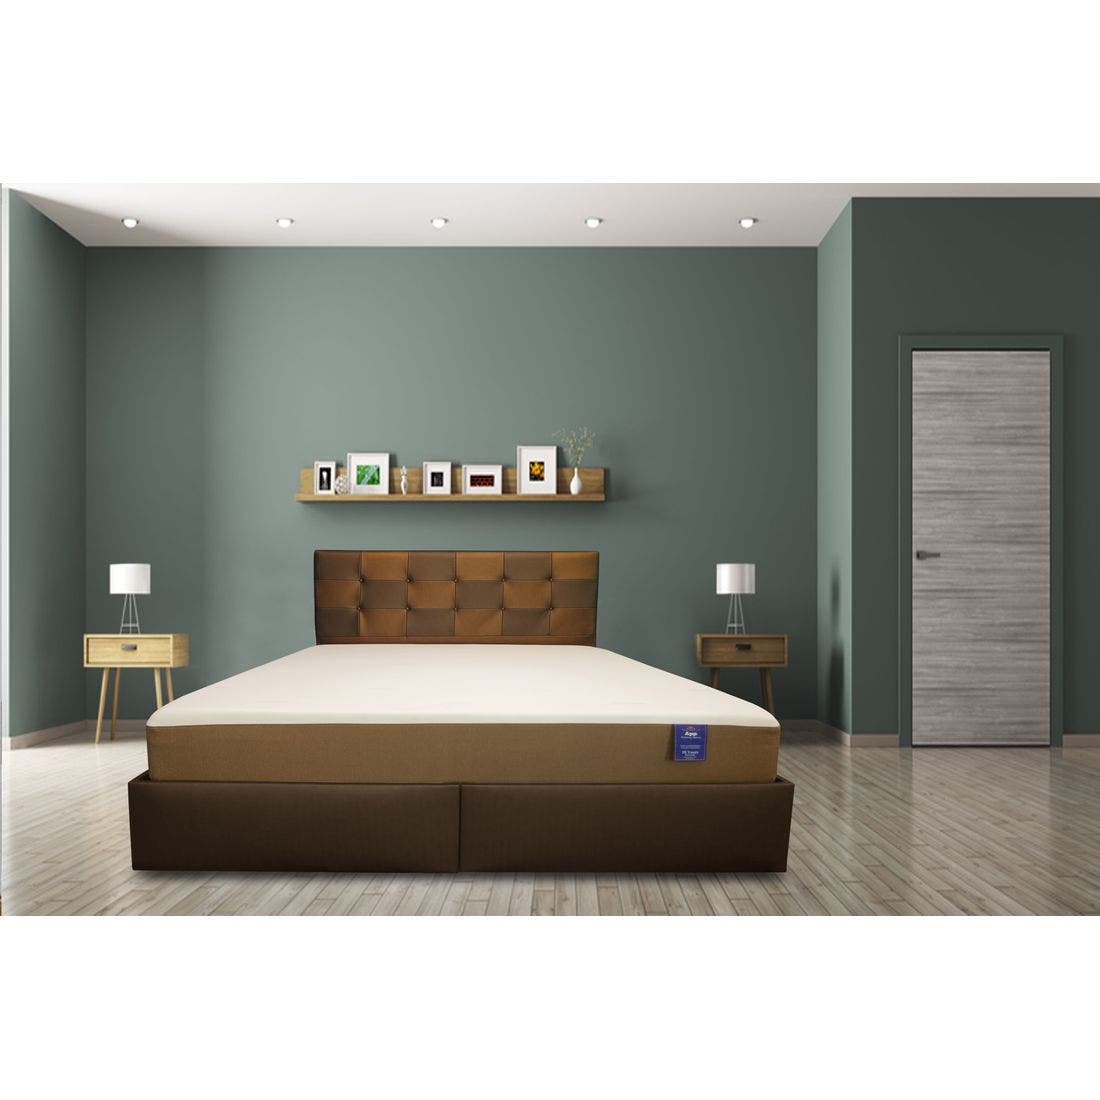 39015080-mattress-bedding-mattresses-pocket-spring-mattress-31